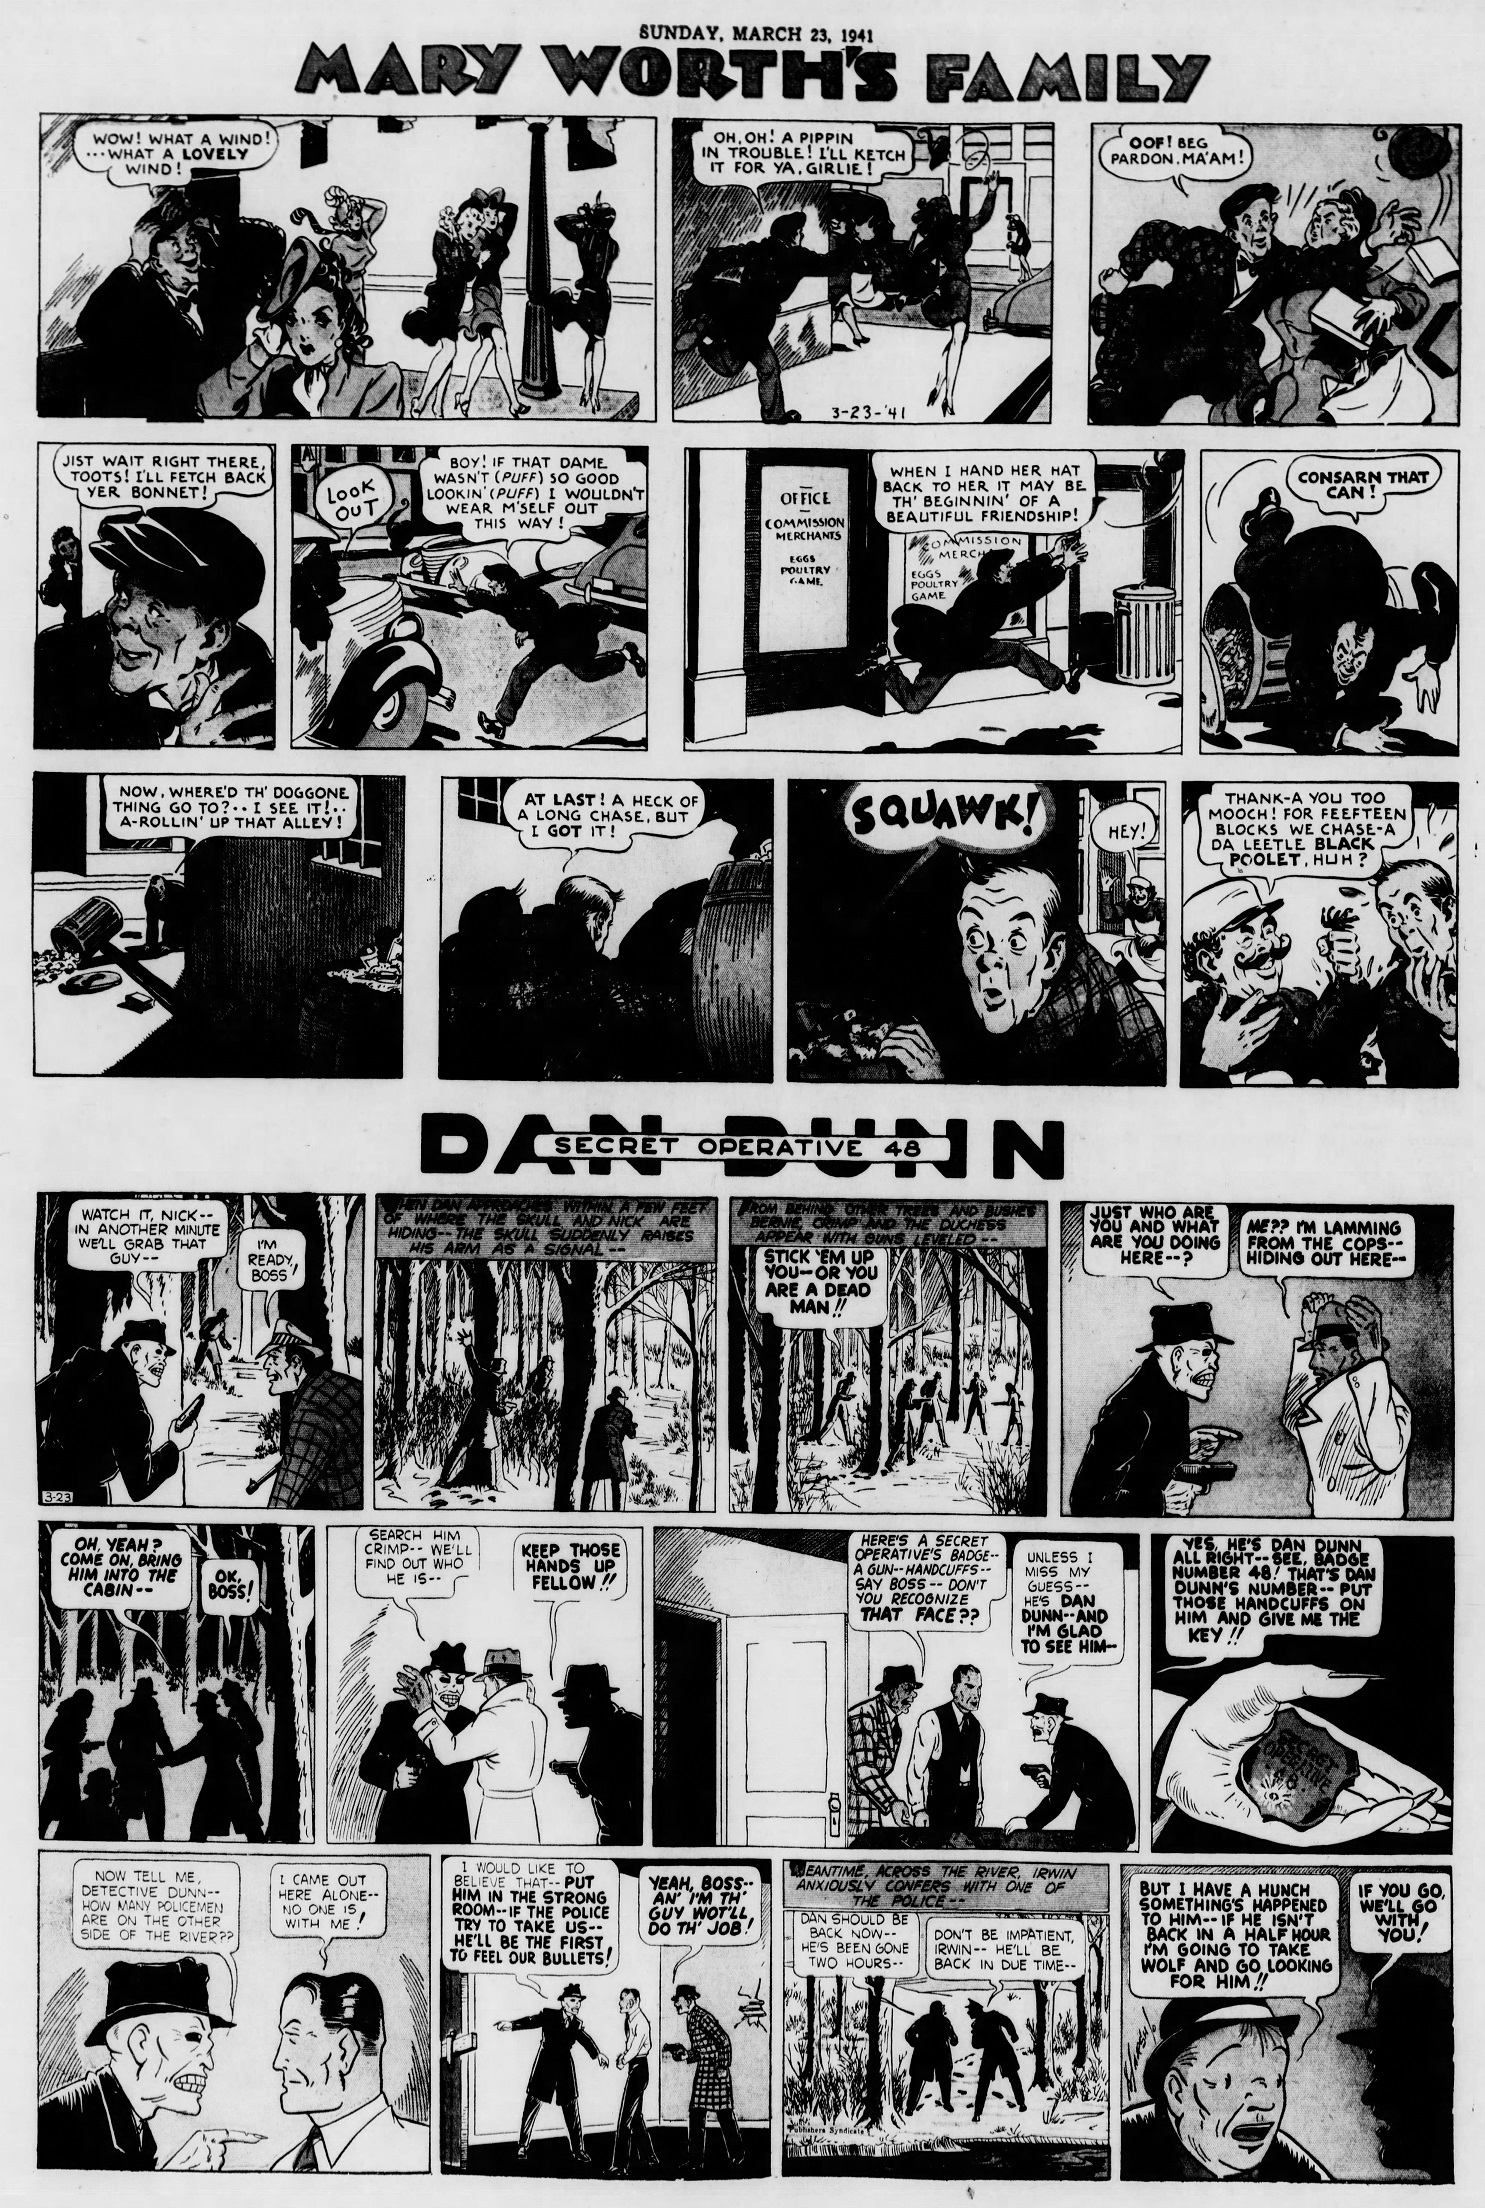 The_Brooklyn_Daily_Eagle_Sun__Mar_23__1941_(7).jpg